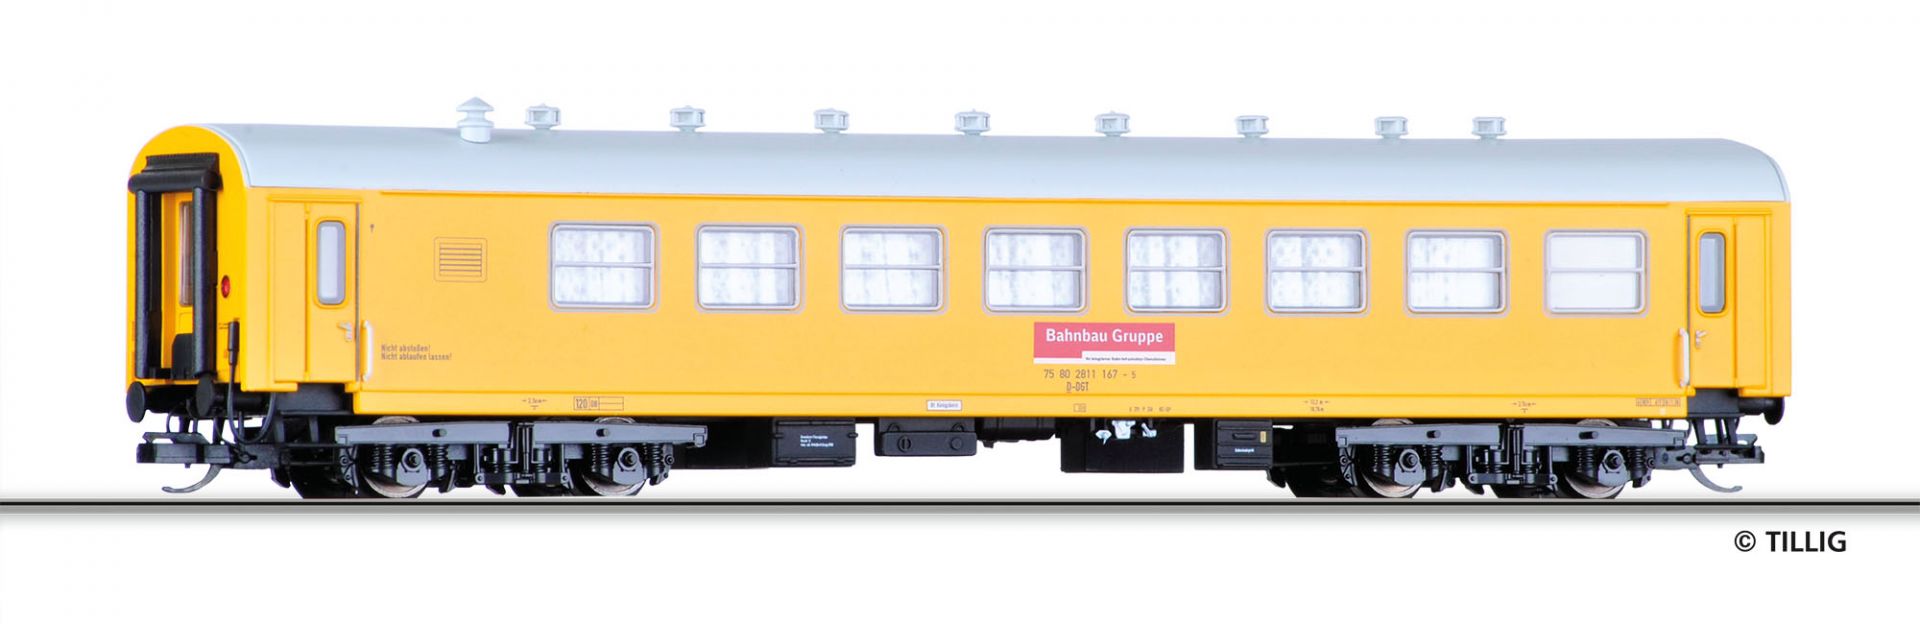 501807 | Aufenthaltswagen Bahnbau Gruppe -werksseitig ausverkauft-